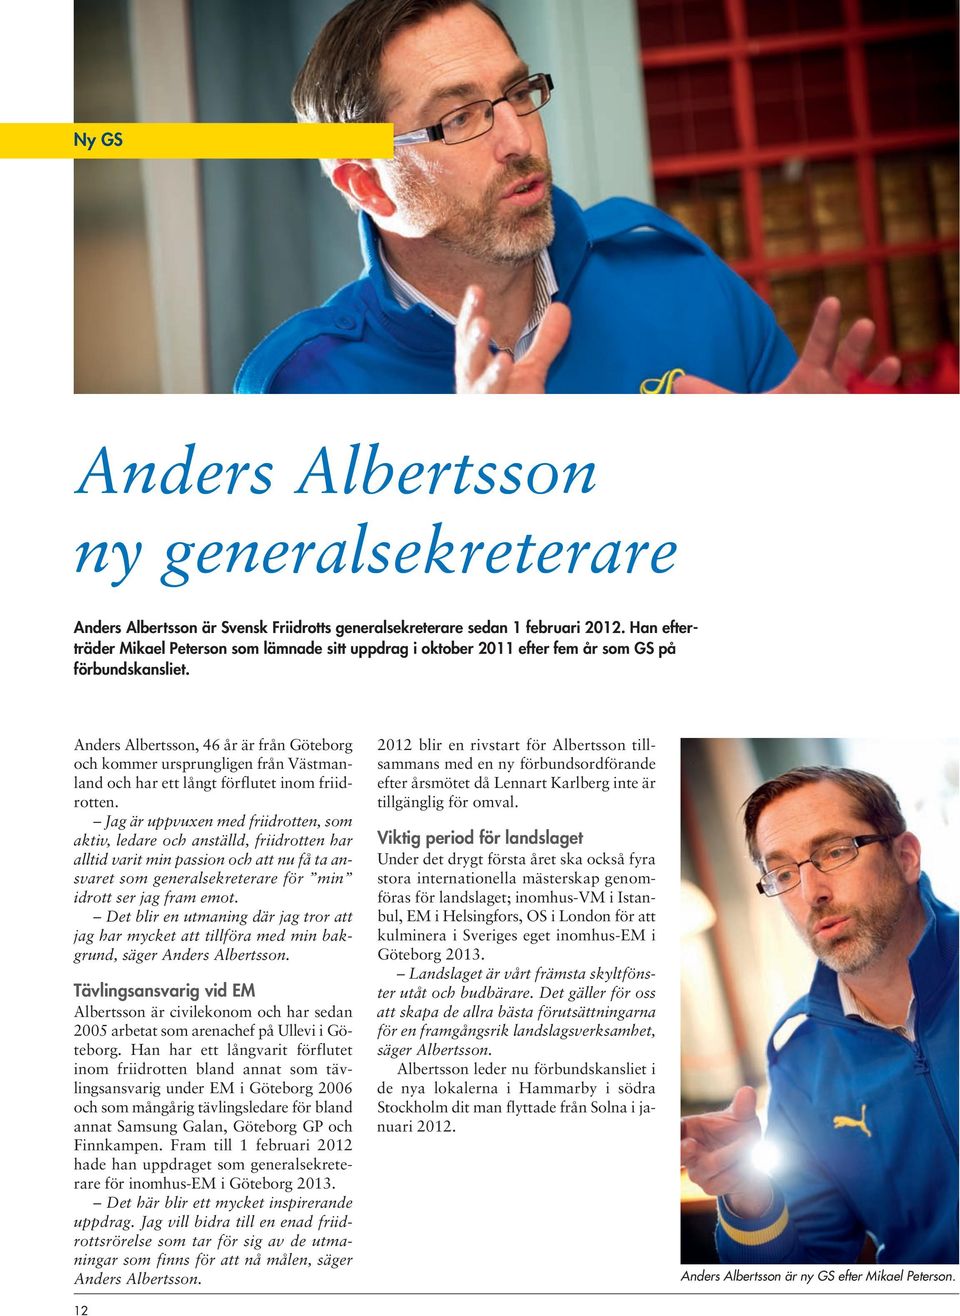 Anders Albertsson, 46 år är från Göteborg och kommer ursprungligen från Västmanland och har ett långt förflutet inom friidrotten.